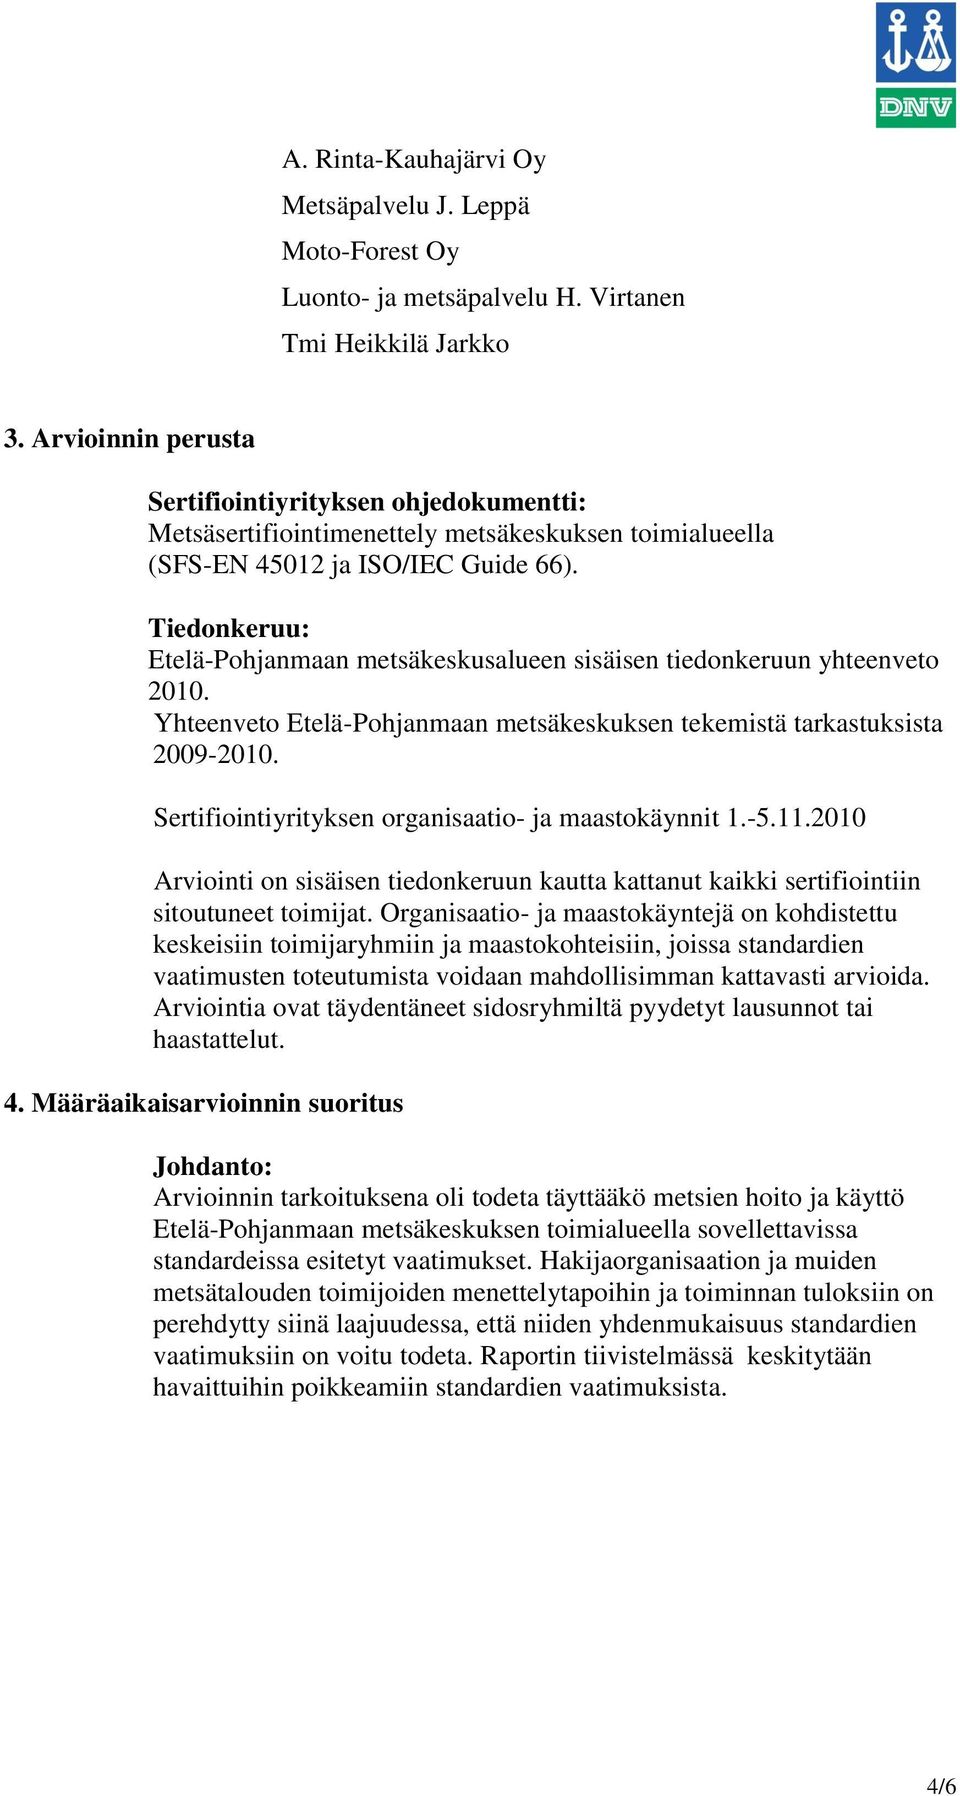 Tiedonkeruu: Etelä-Pohjanmaan metsäkeskusalueen sisäisen tiedonkeruun yhteenveto 2010. Yhteenveto Etelä-Pohjanmaan metsäkeskuksen tekemistä tarkastuksista 2009-2010.